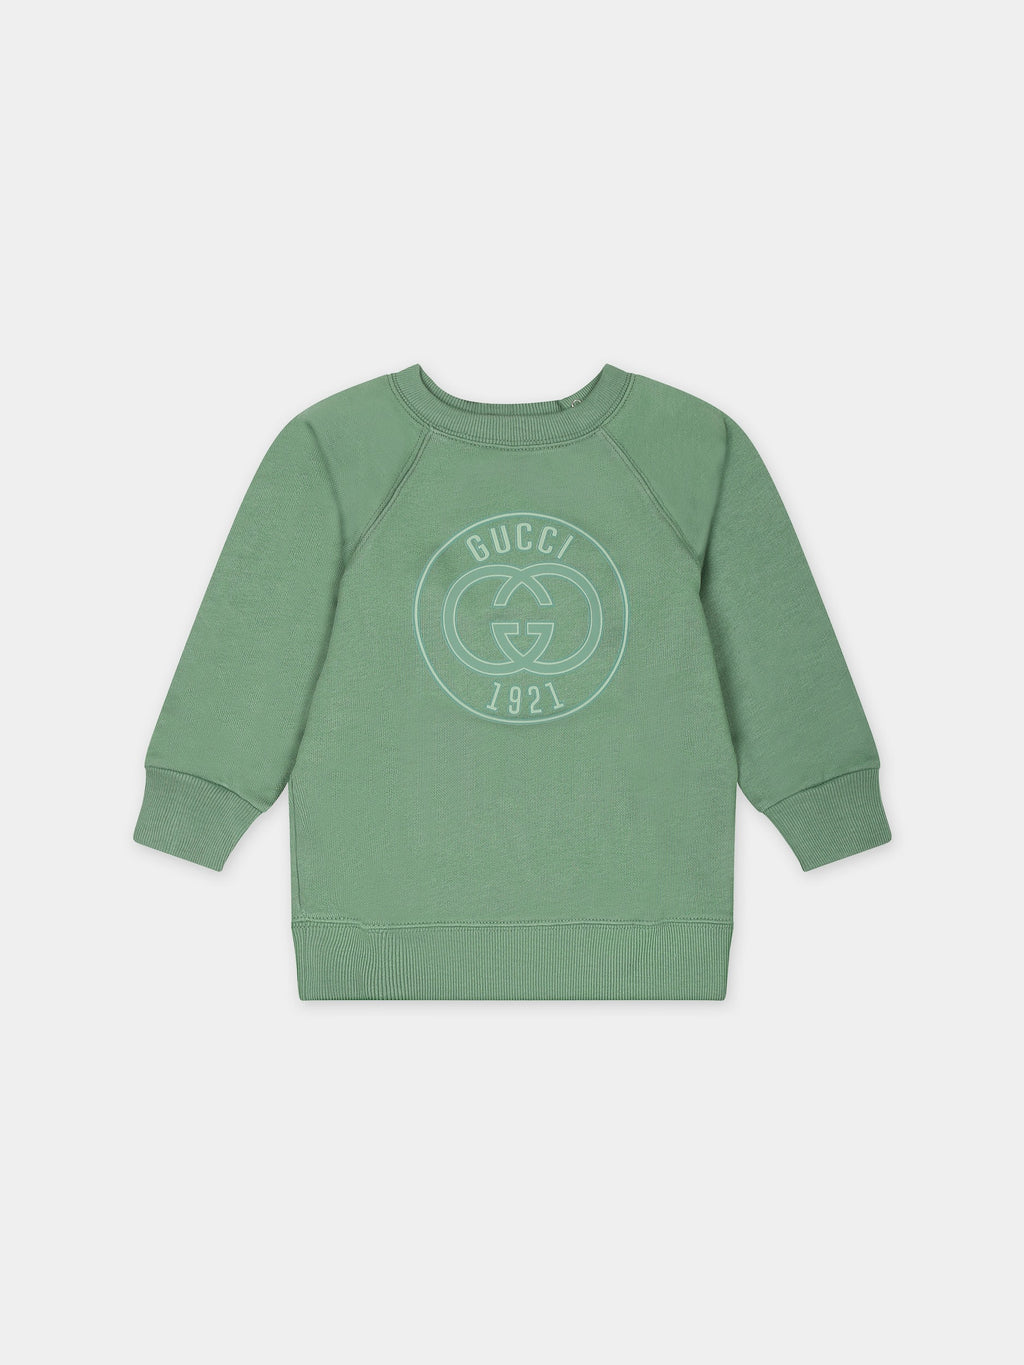 Felpa verde per neonati con logo Gucci 1921